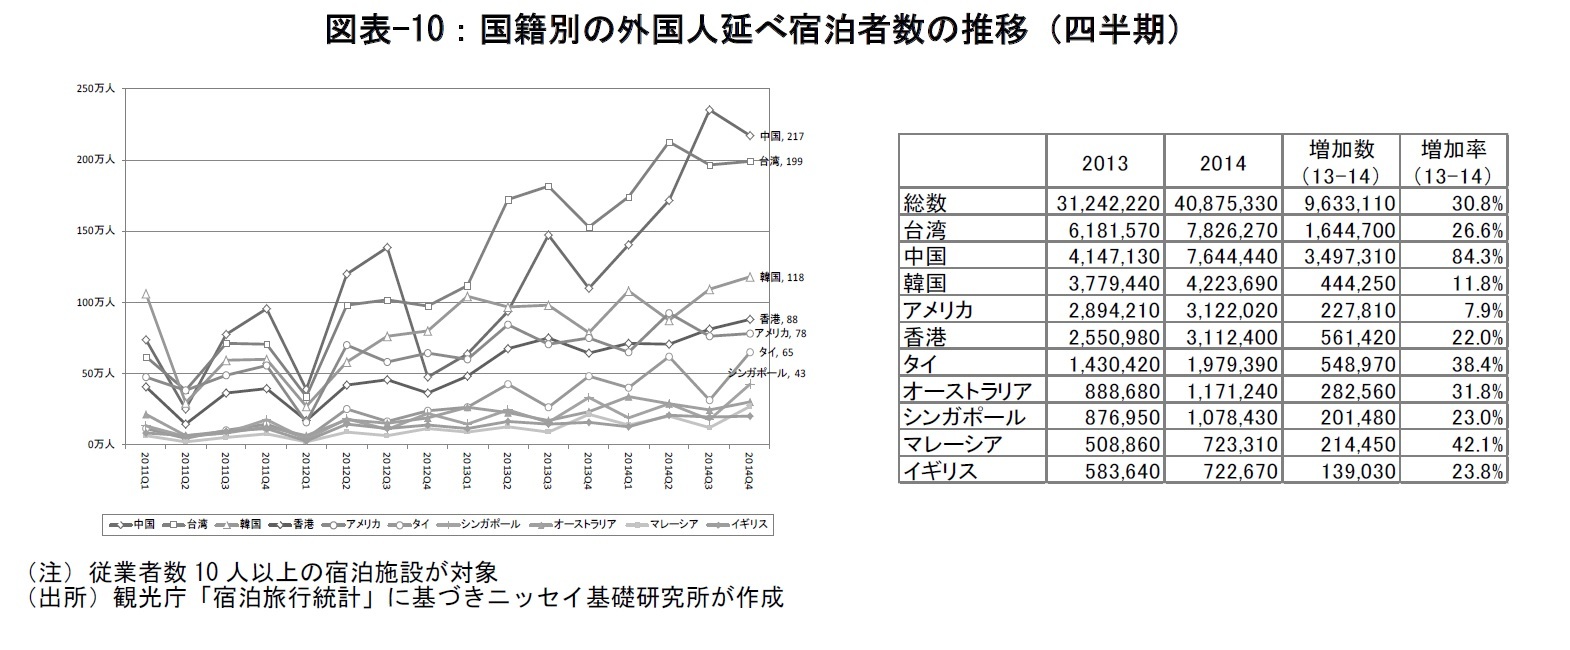 図表-10：国籍別の外国人延べ宿泊者数の推移（四半期）